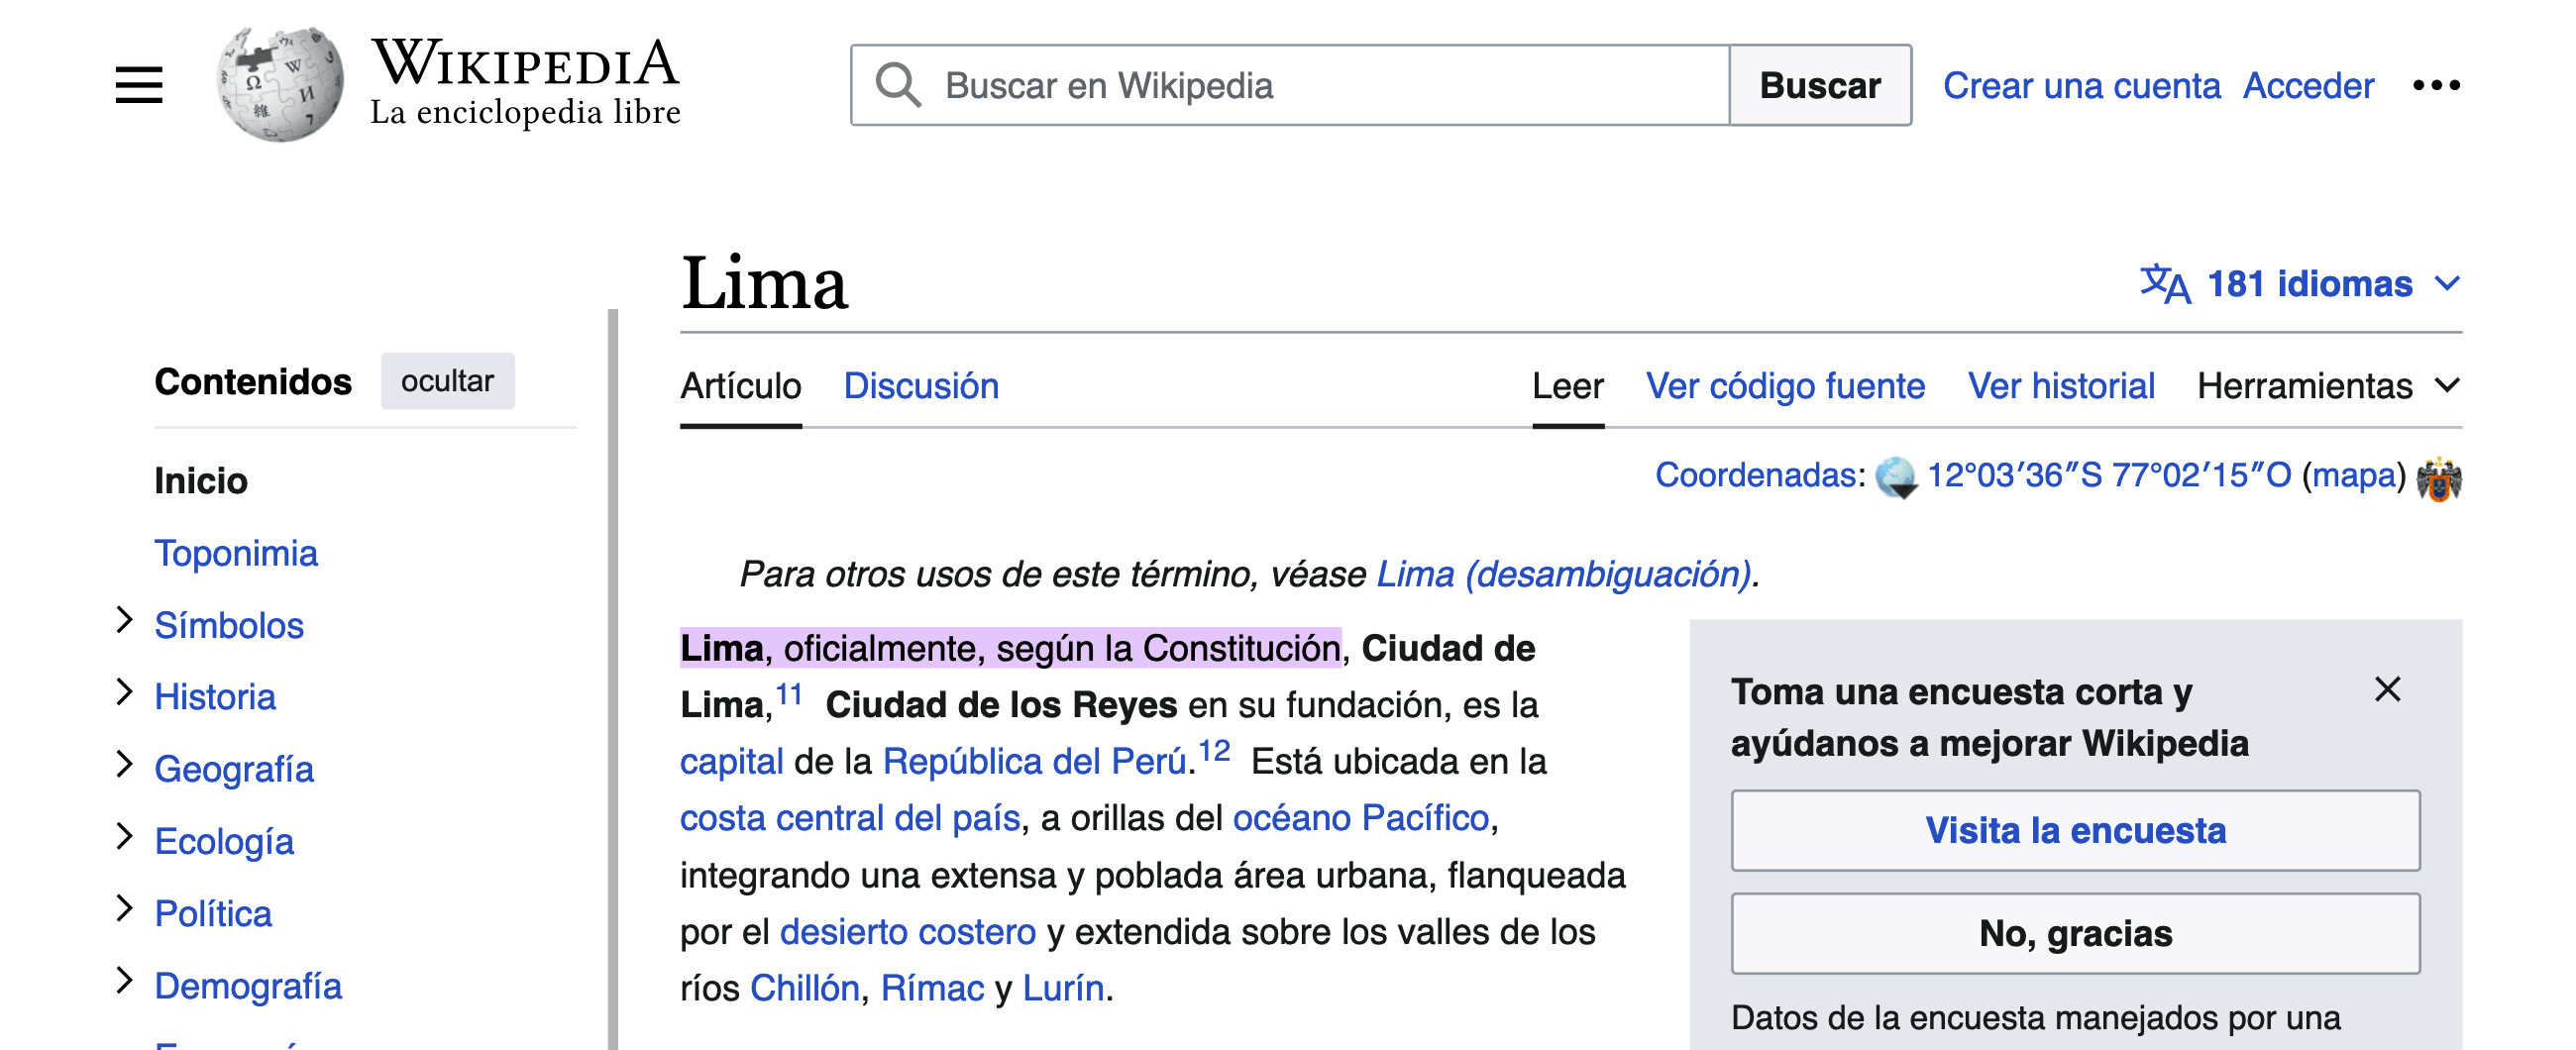 Enlaces de fragmento de texto ejemplo wikipedia.es lima peru